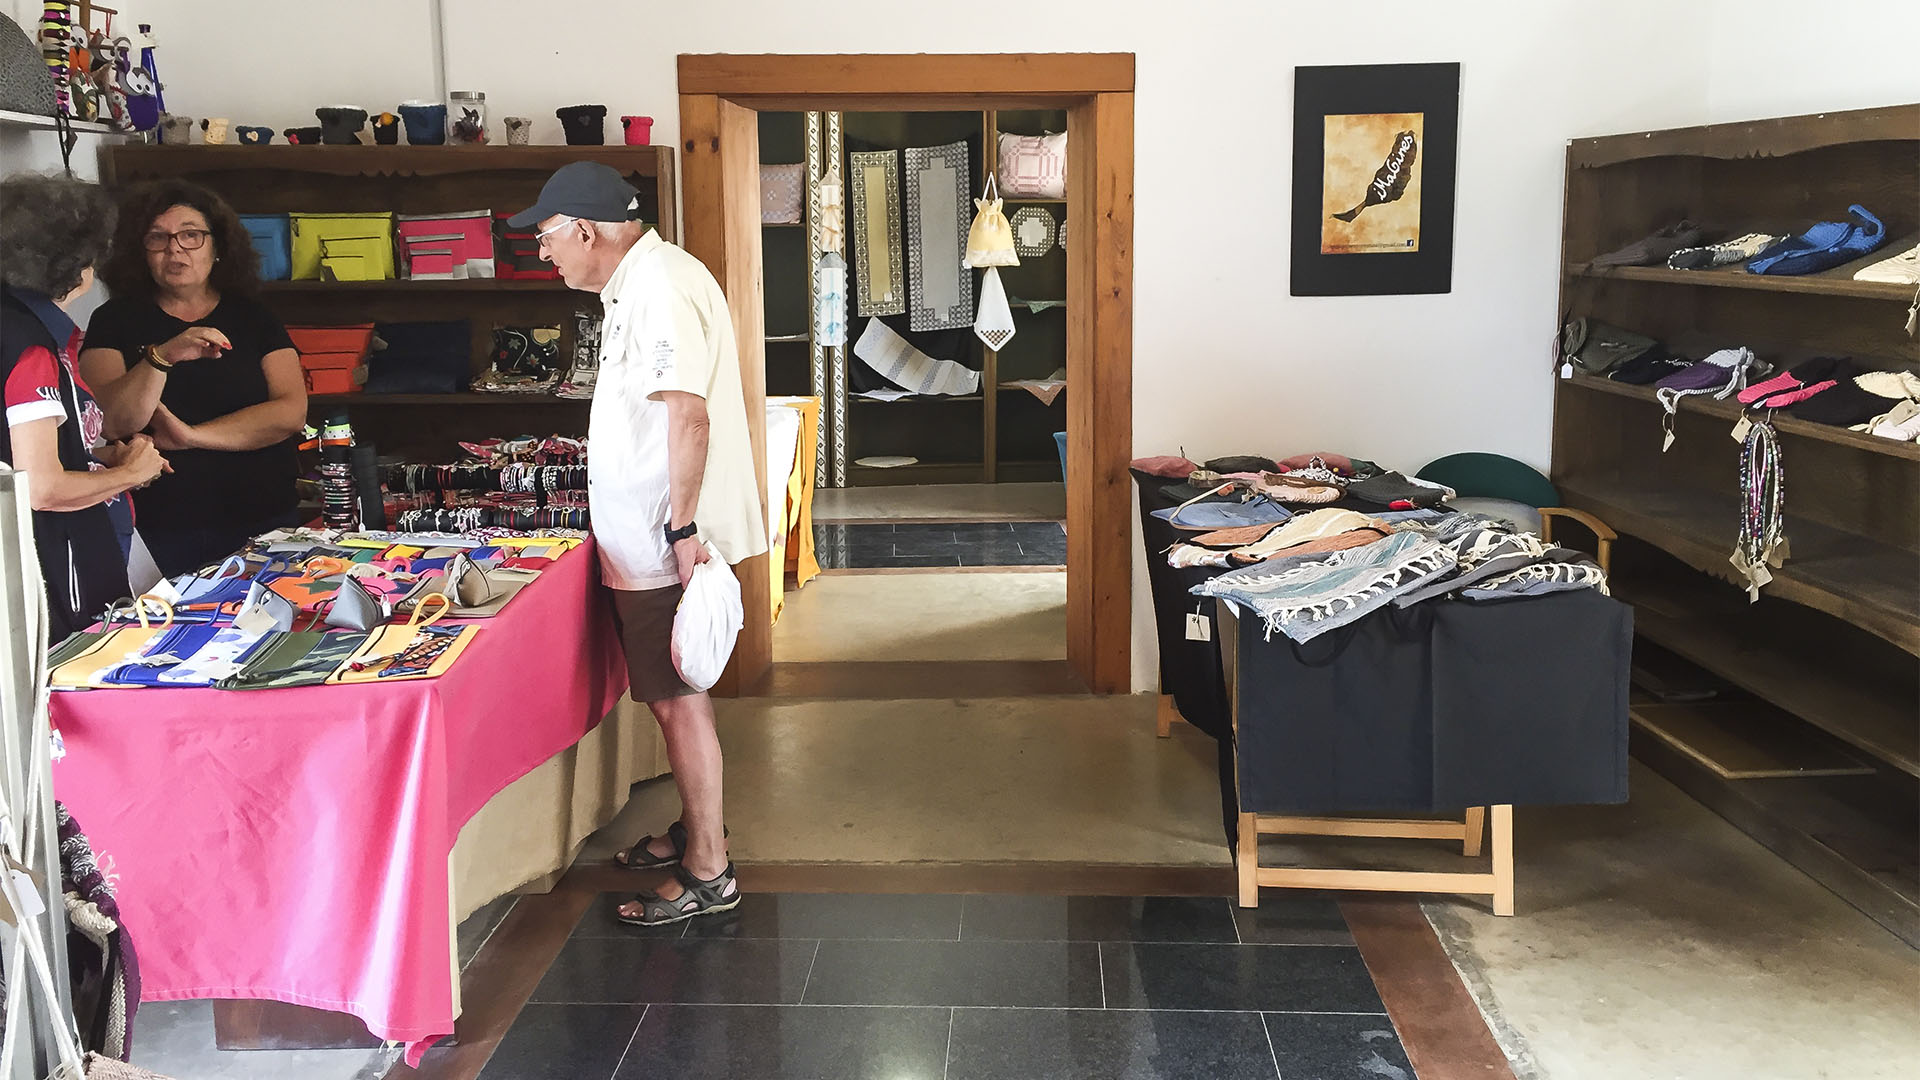 Der Ort La Oliva Fuerteventura: Der Mercado de los Tradiciones in der Casa de Coronel.